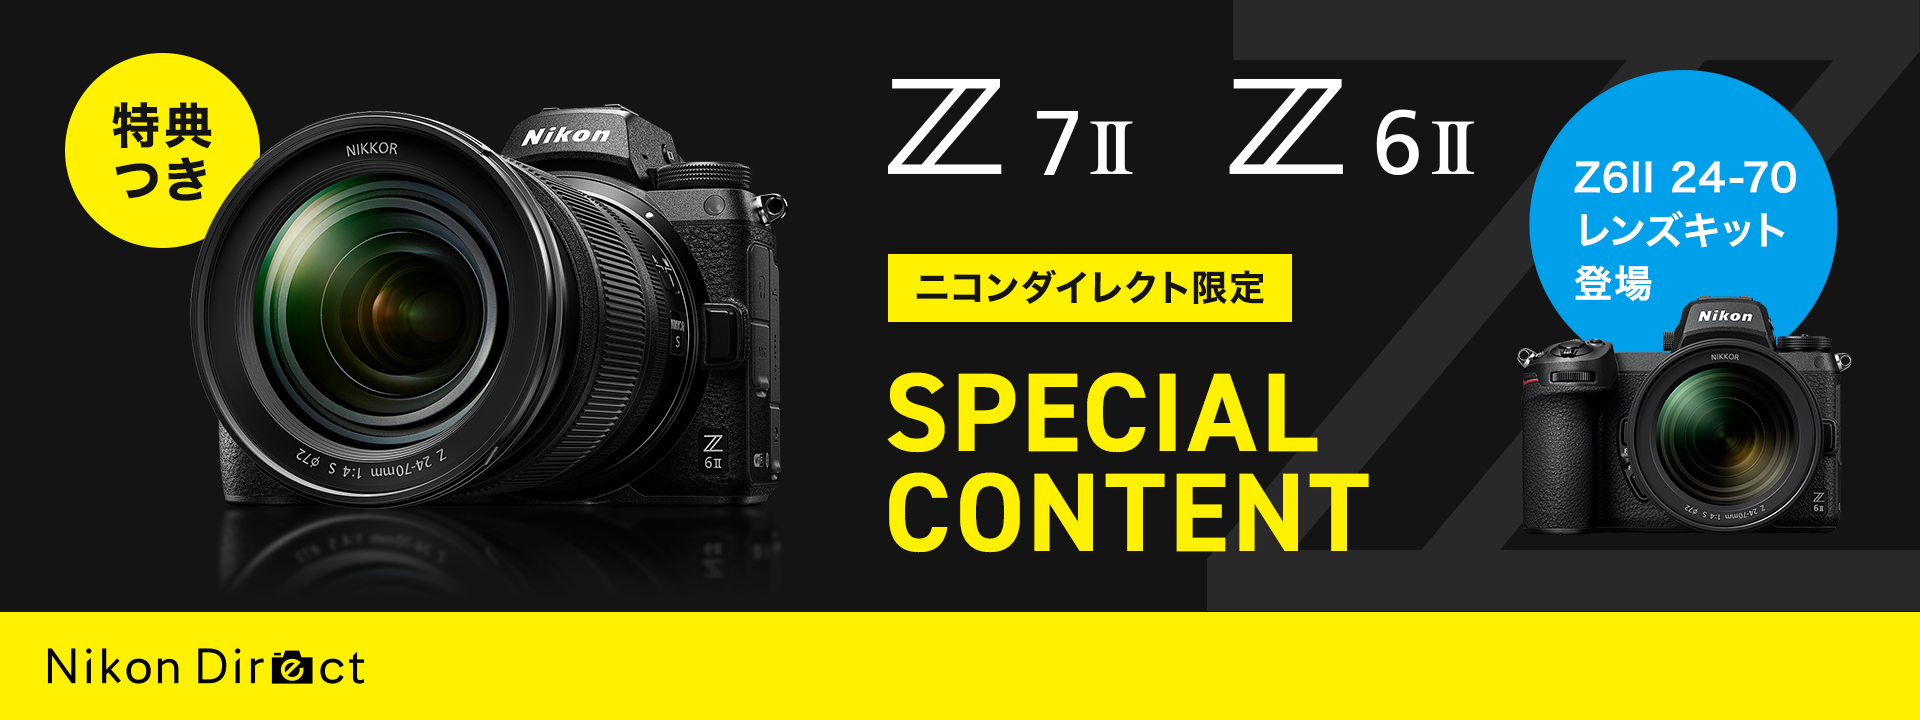 Z 7II - 概要 | ミラーレスカメラ | ニコンイメージング